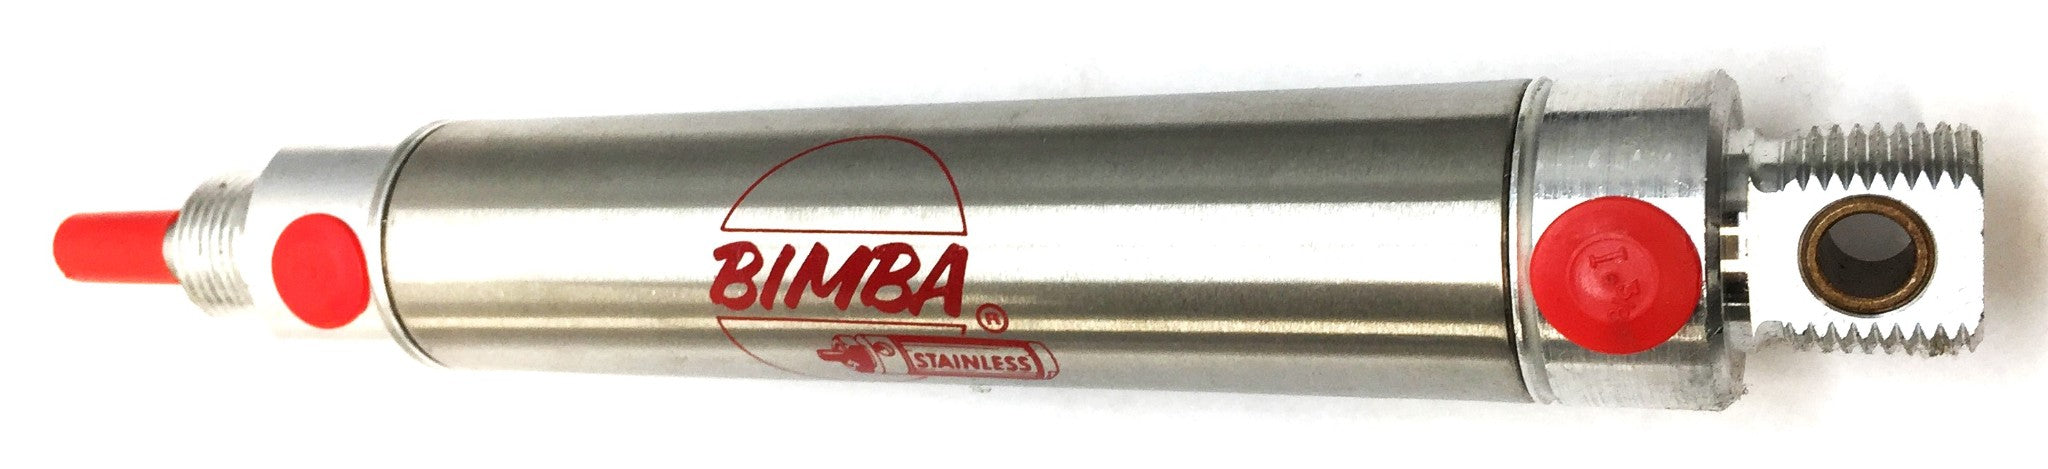 Bimba Pneumatic Air Cylinder MRS-124-DXP NOS